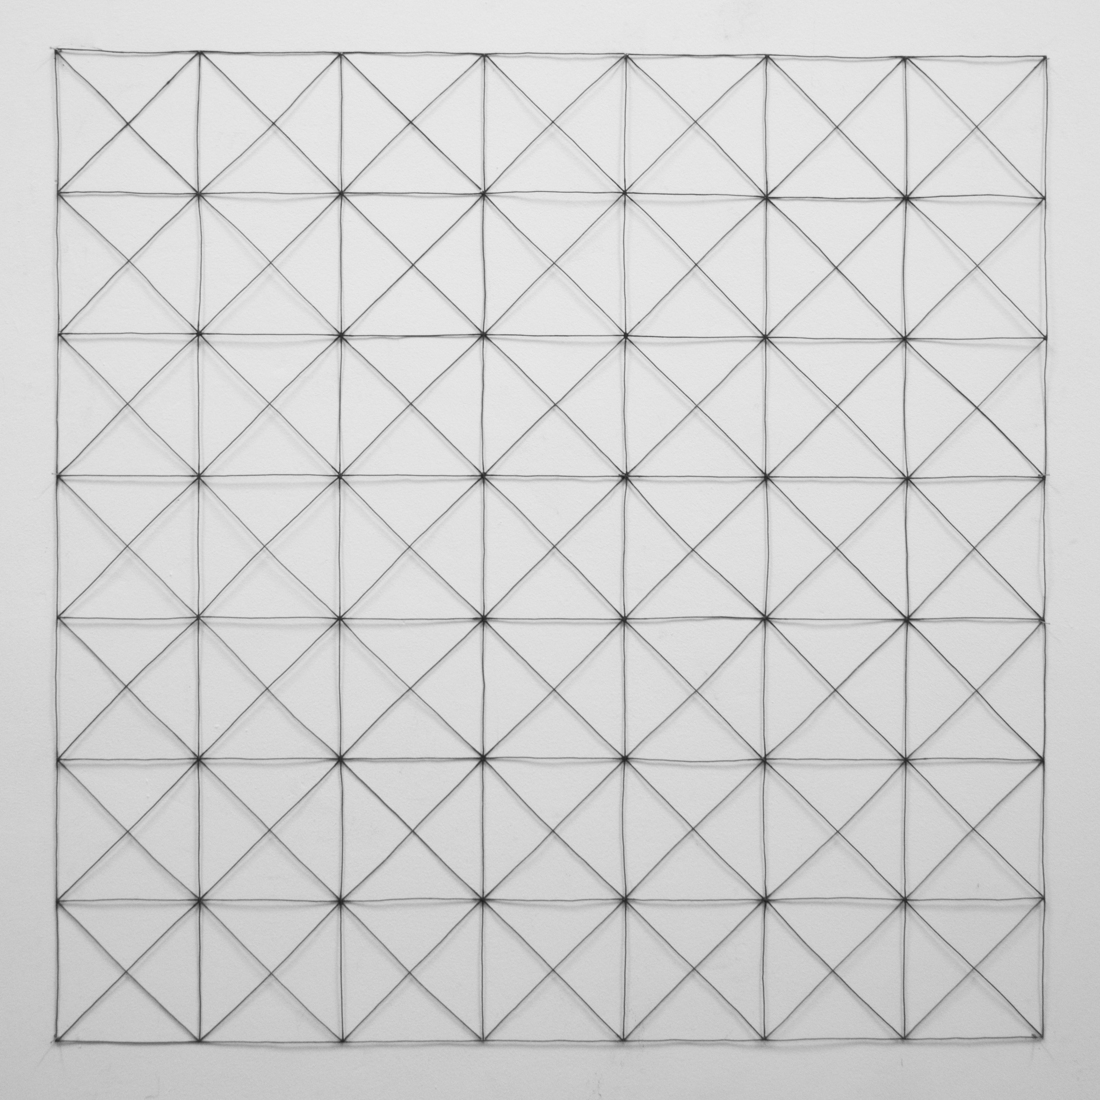 Negenenveertig vierkanten met diagonalen